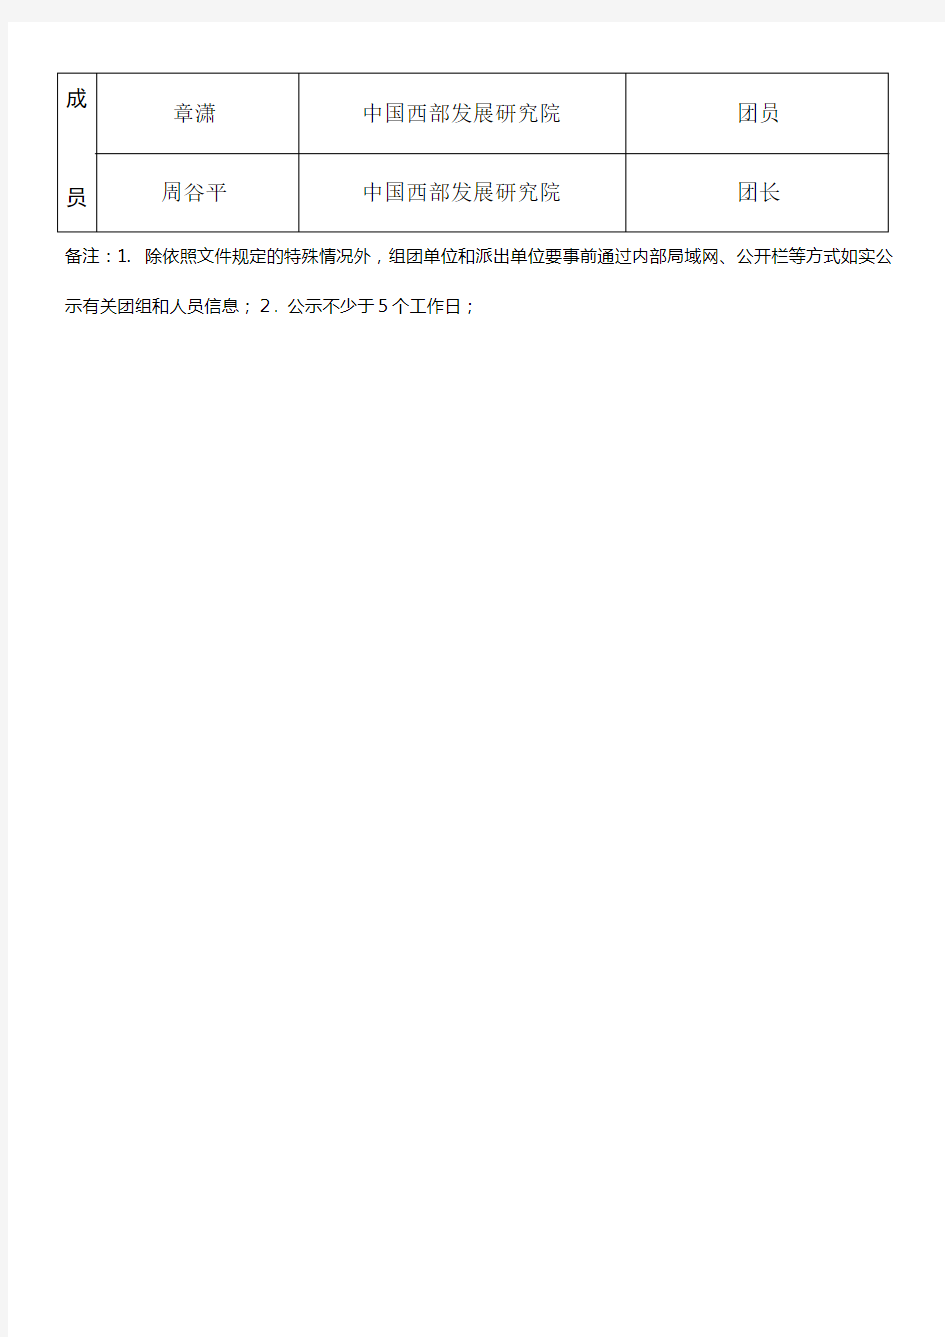 浙江大学因公出国(境)团组信息事前内部公示